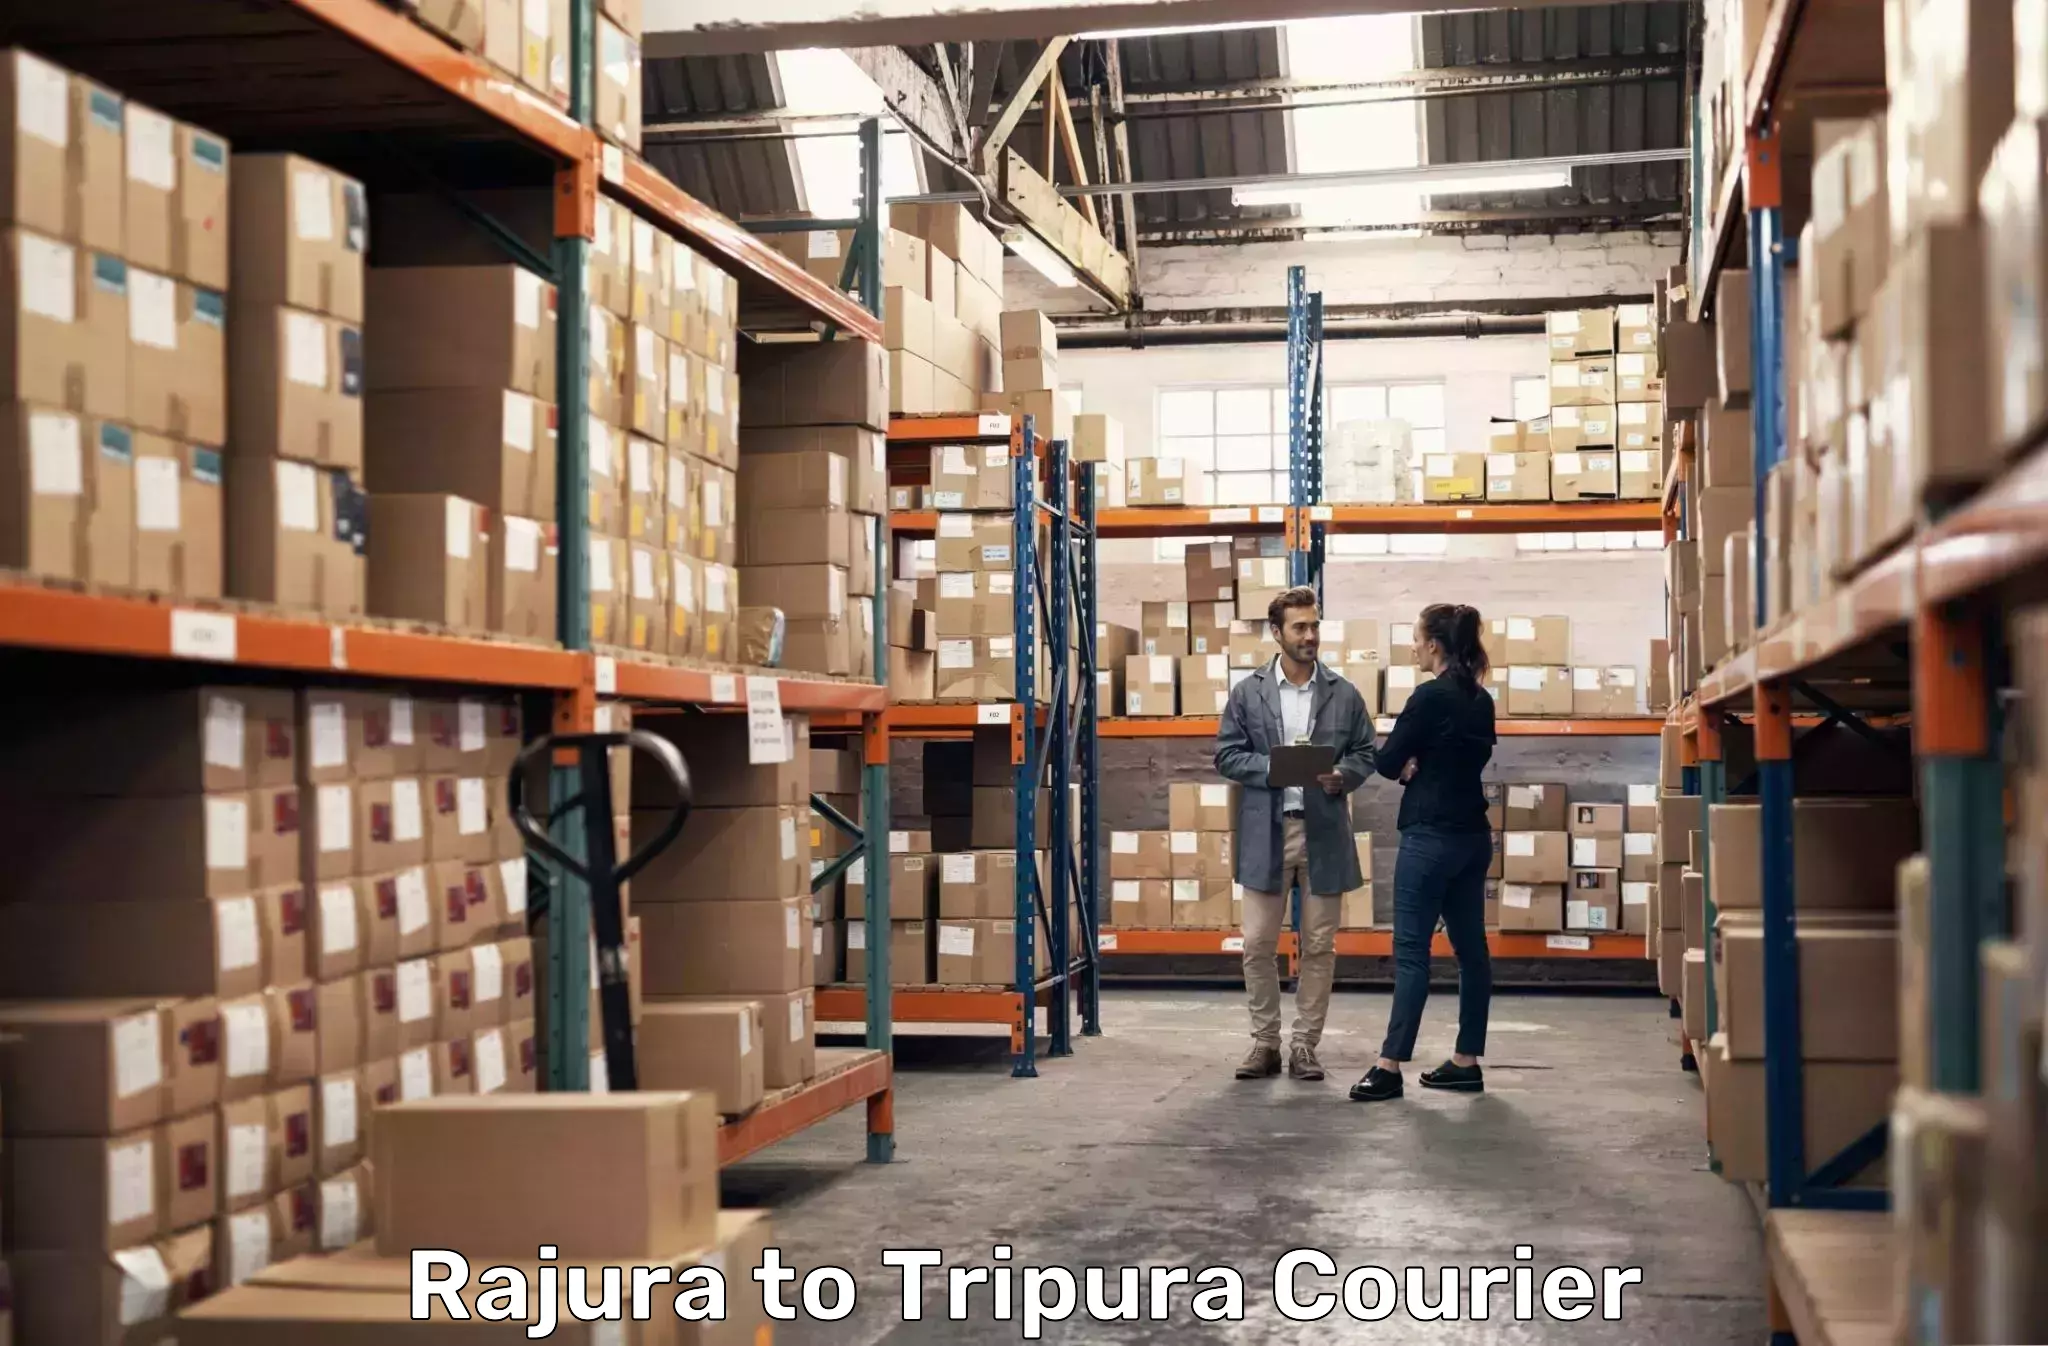 Courier service comparison Rajura to Tripura